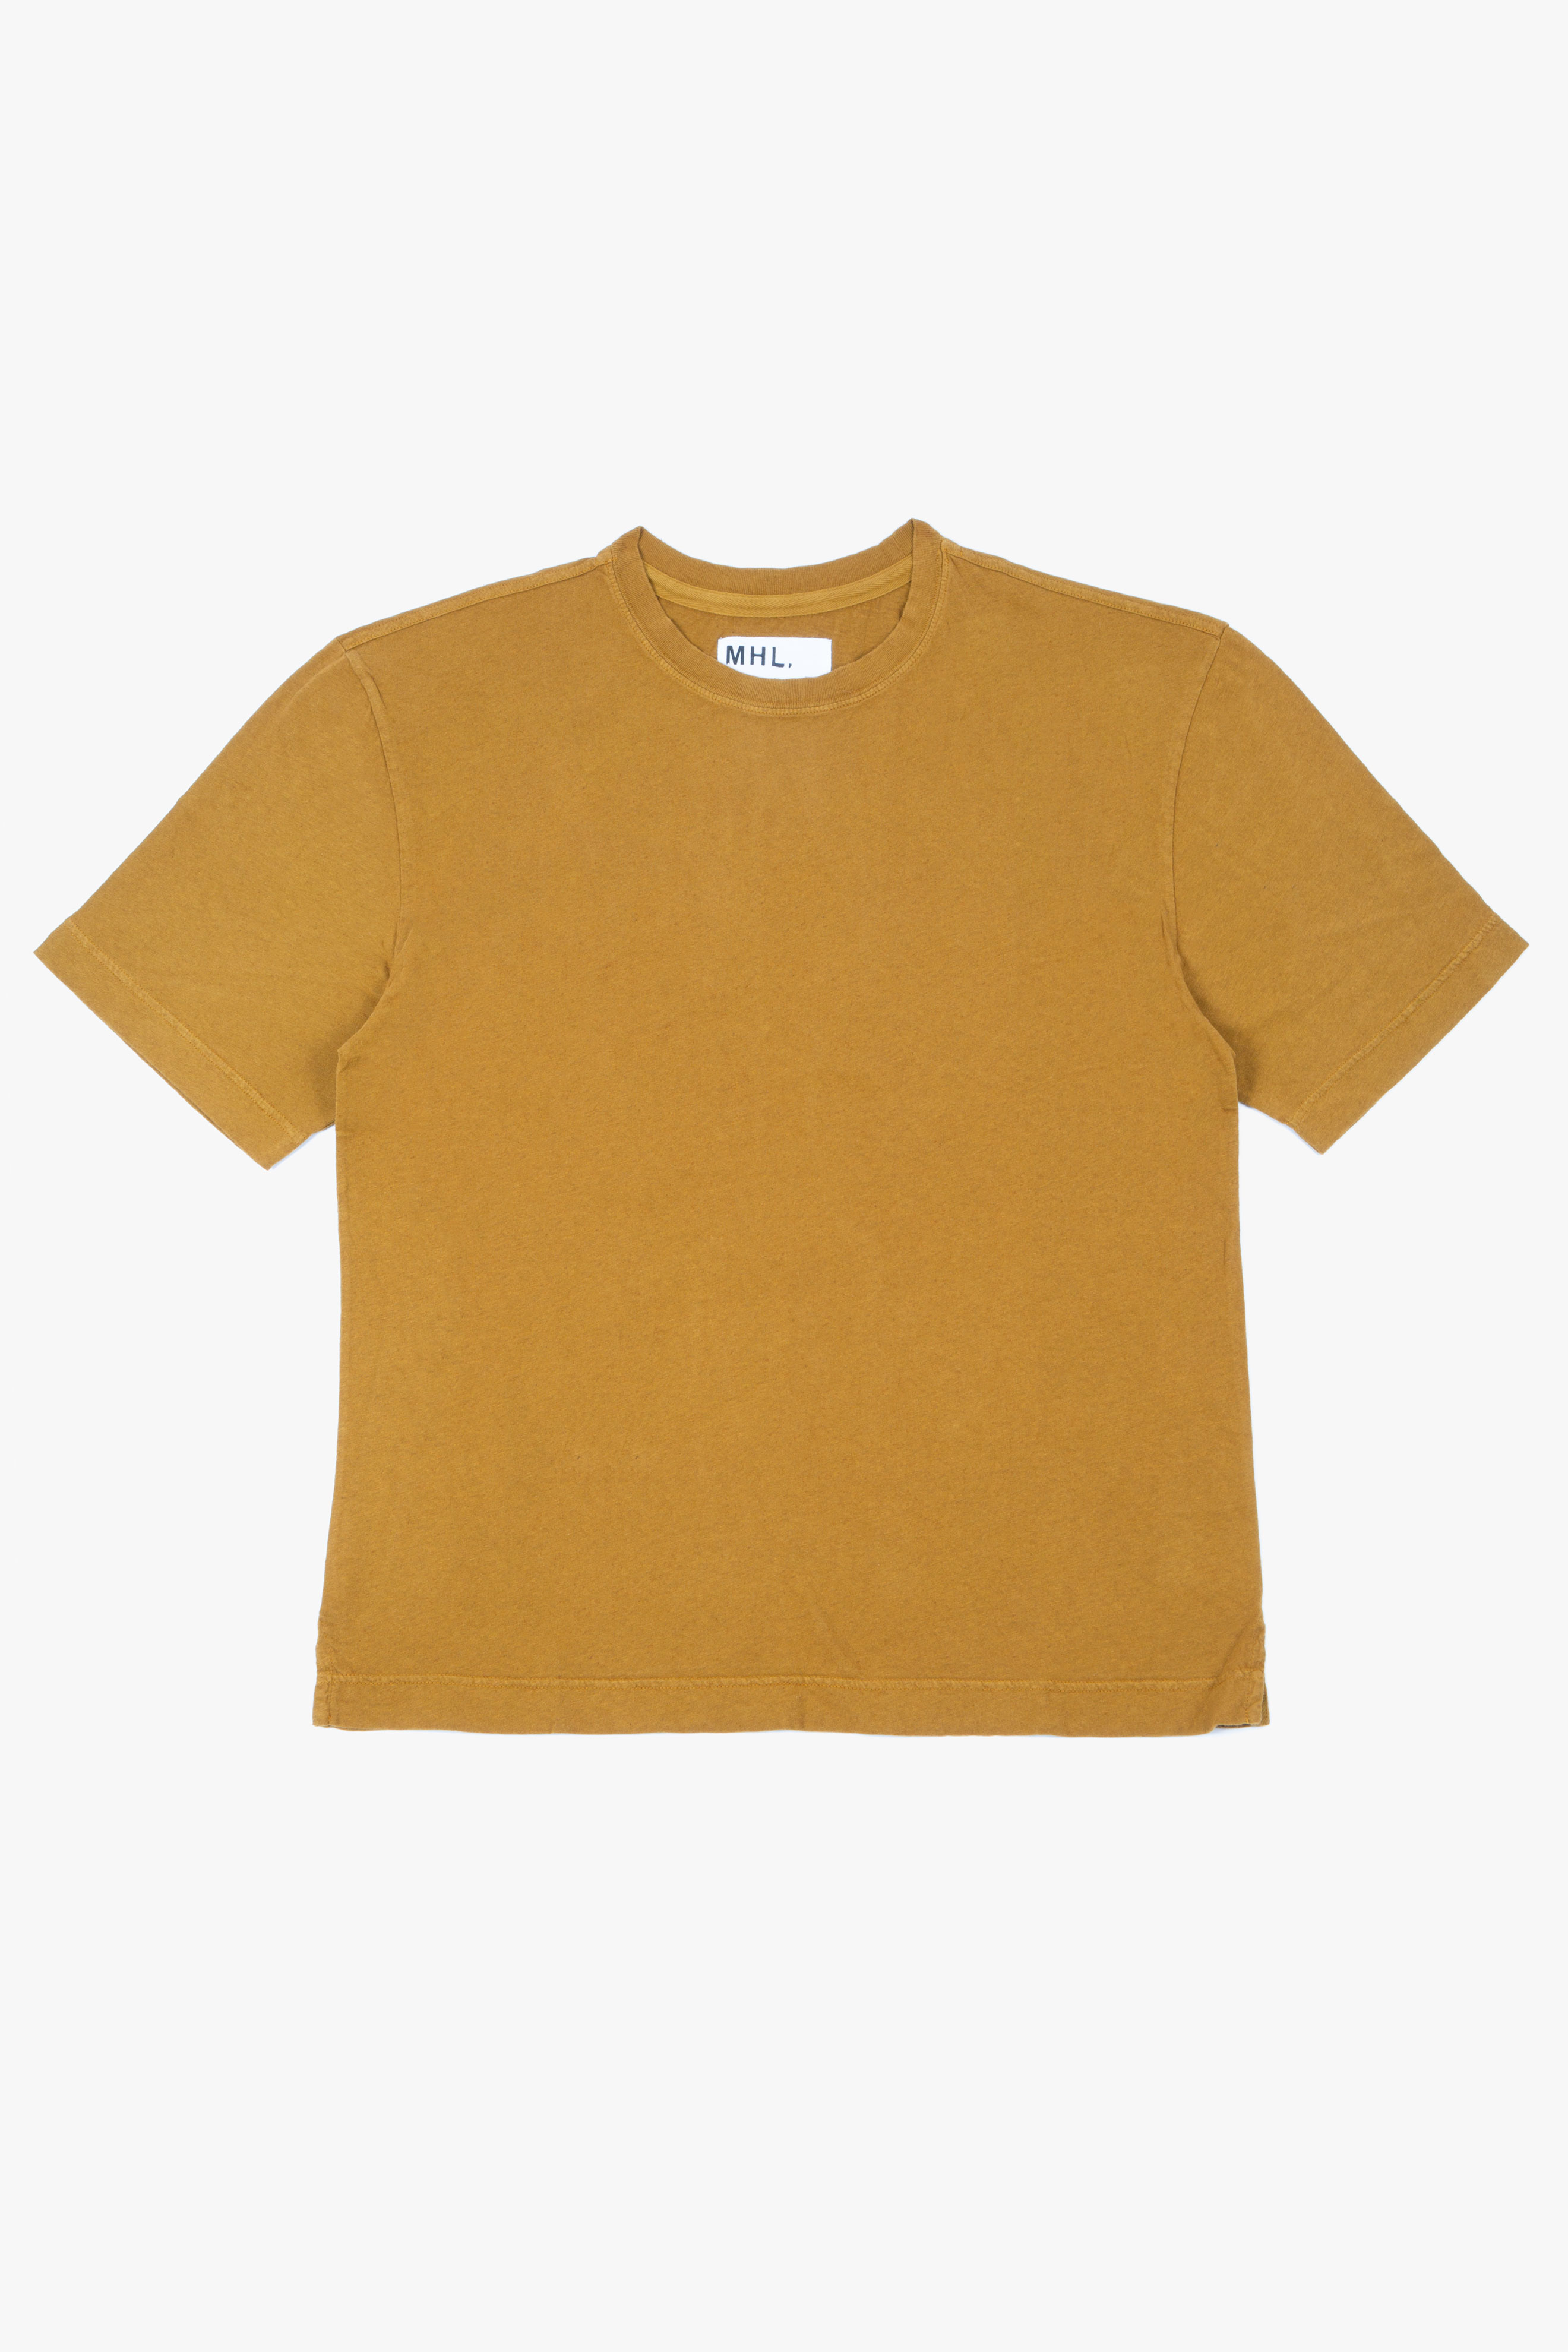 Simple T-Shirt Cotton/Linen Mustard